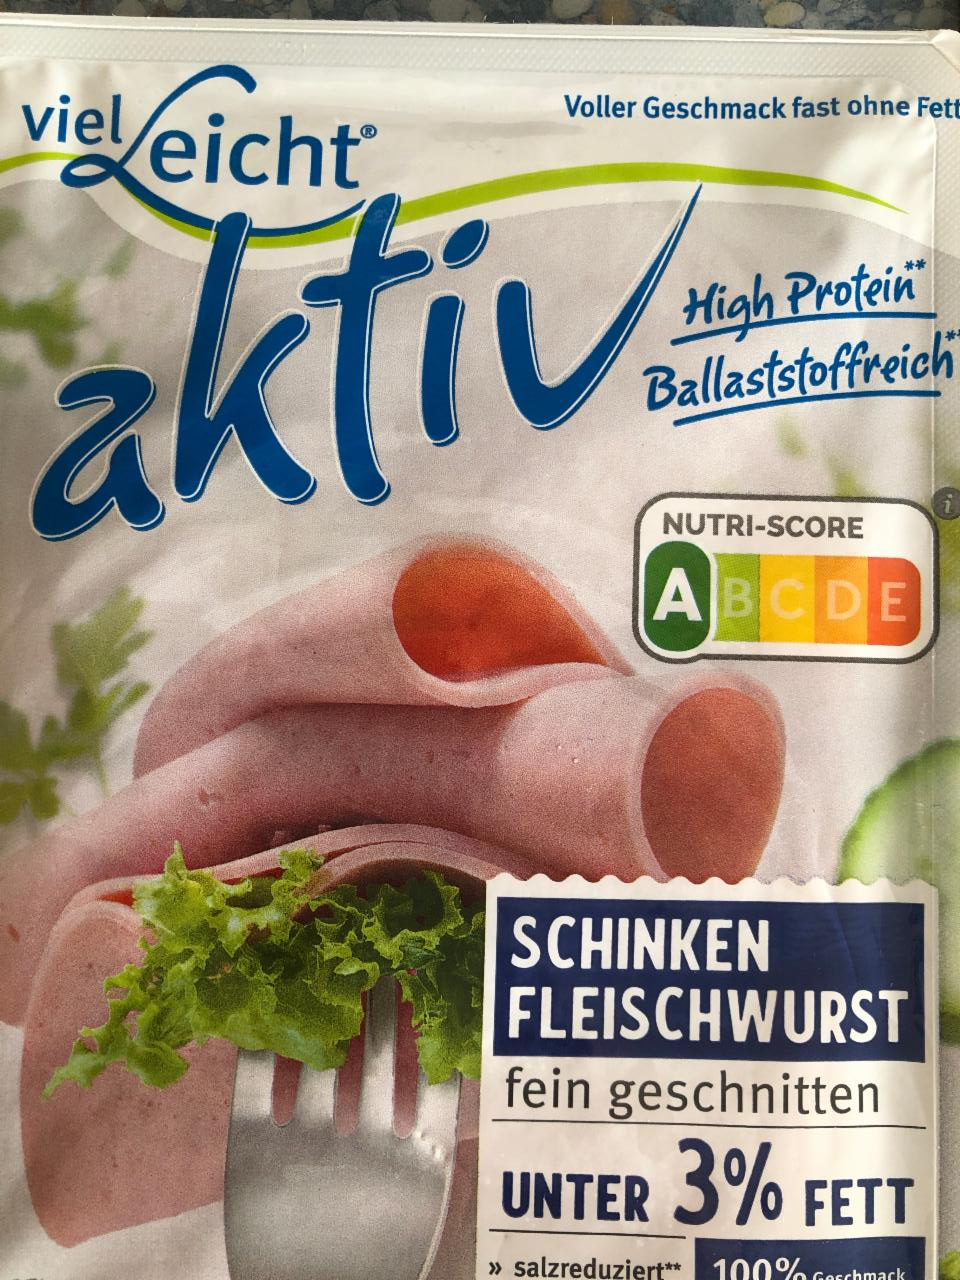 Fotografie - Aktiv Schinken-Fleischwurst VielLeicht